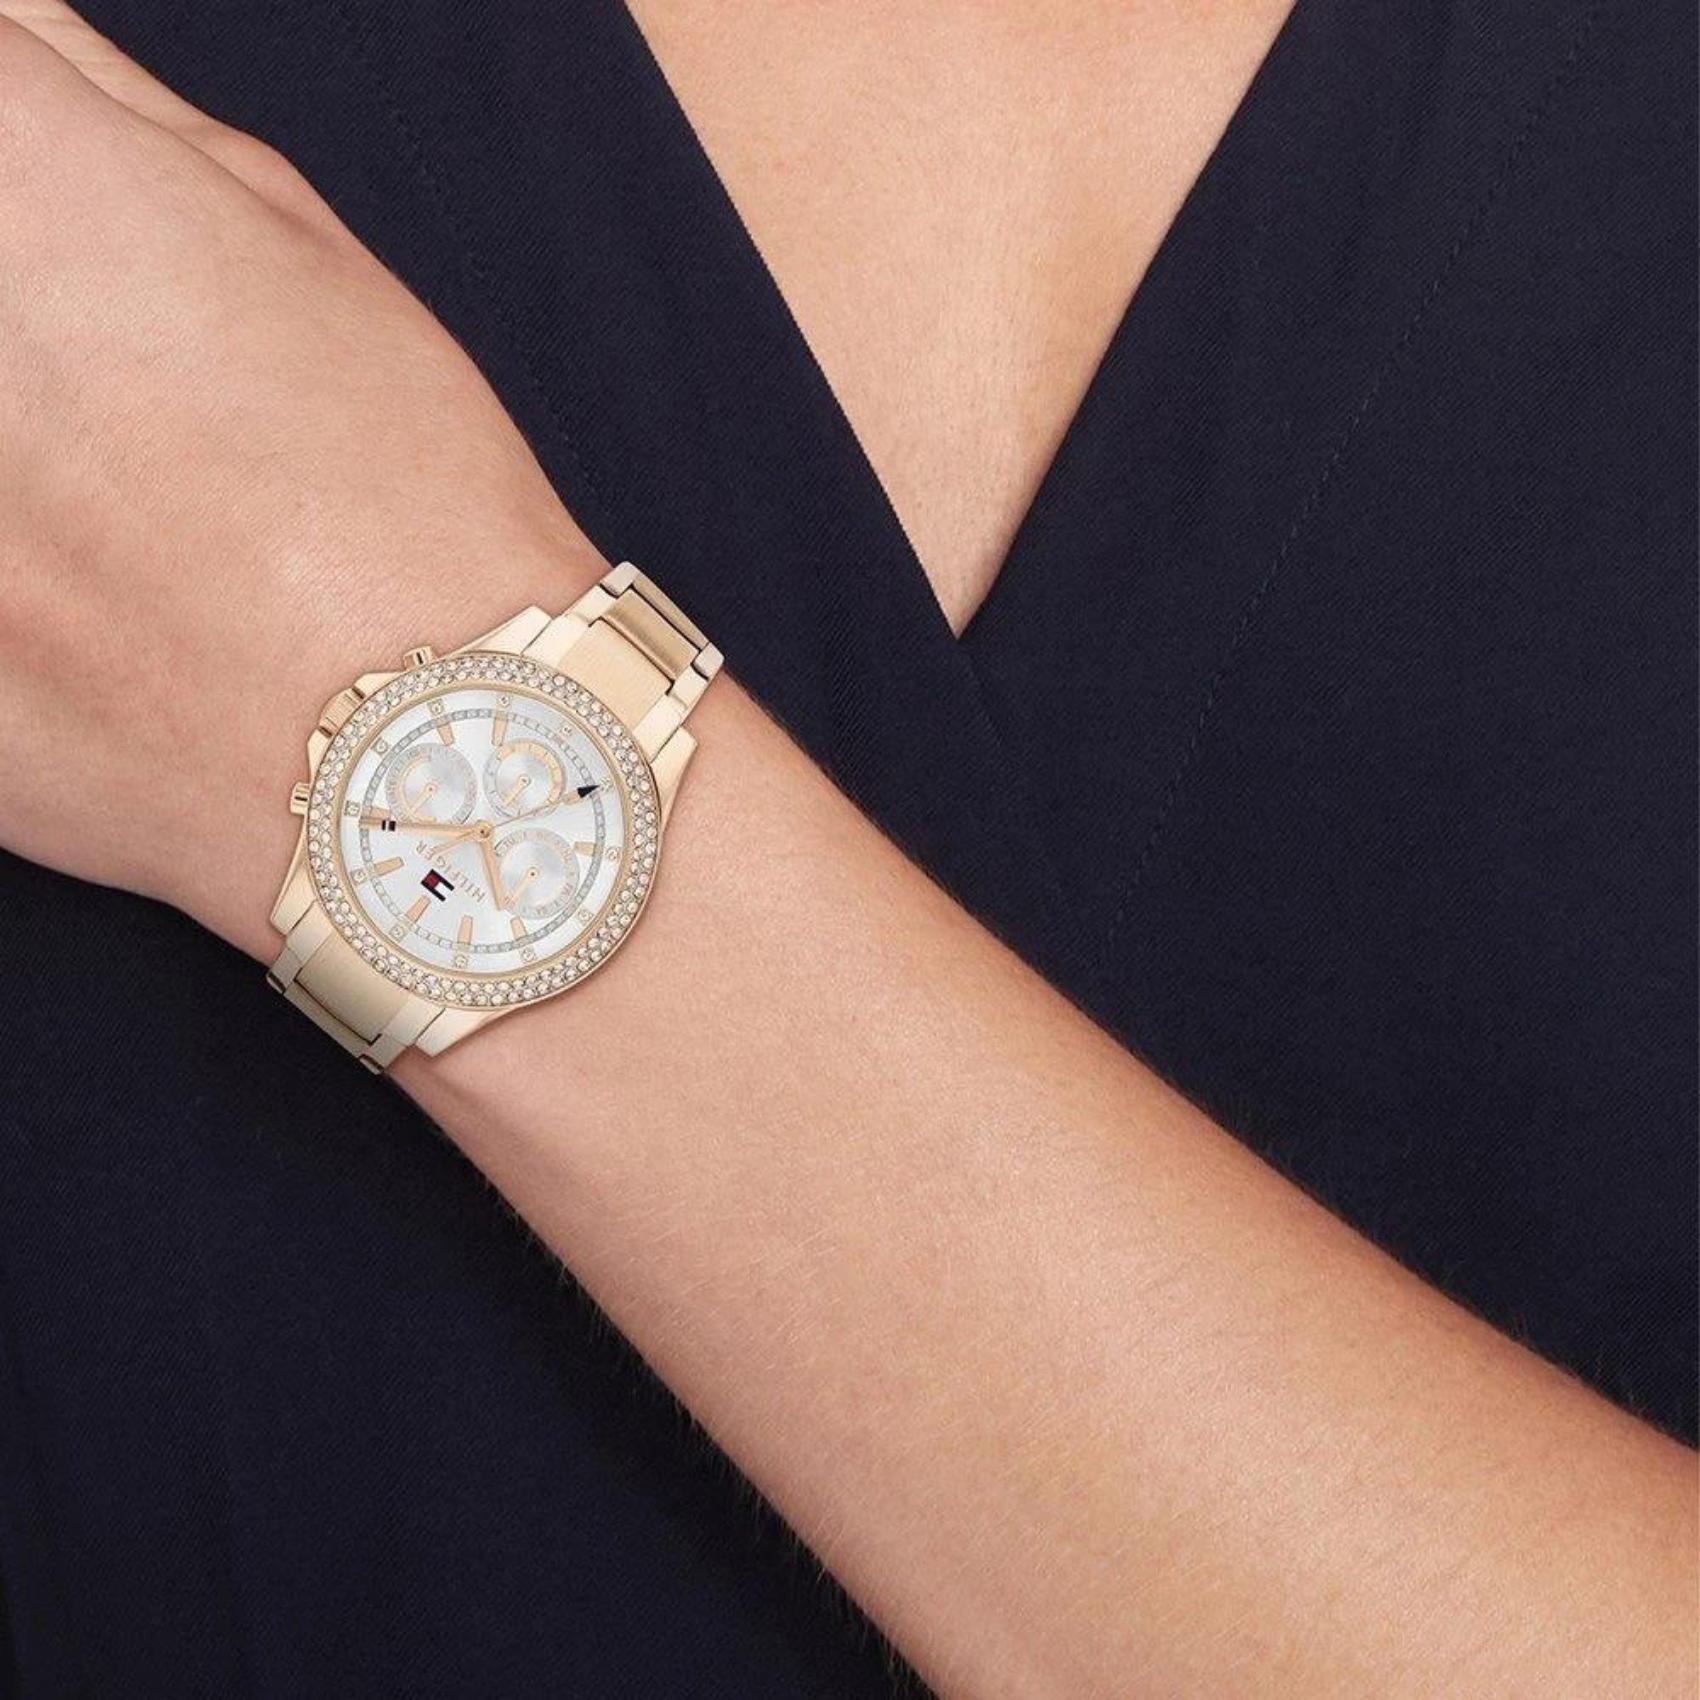 Γυναικείο ρολόι Tommy Hilfiger Haven 1782624 με ροζ χρυσό ατσάλινο μπρασελέ και ροζ χρυσό καντράν διαμέτρου 38mm με ημέρα-ημερομηνία και ζιργκόν.